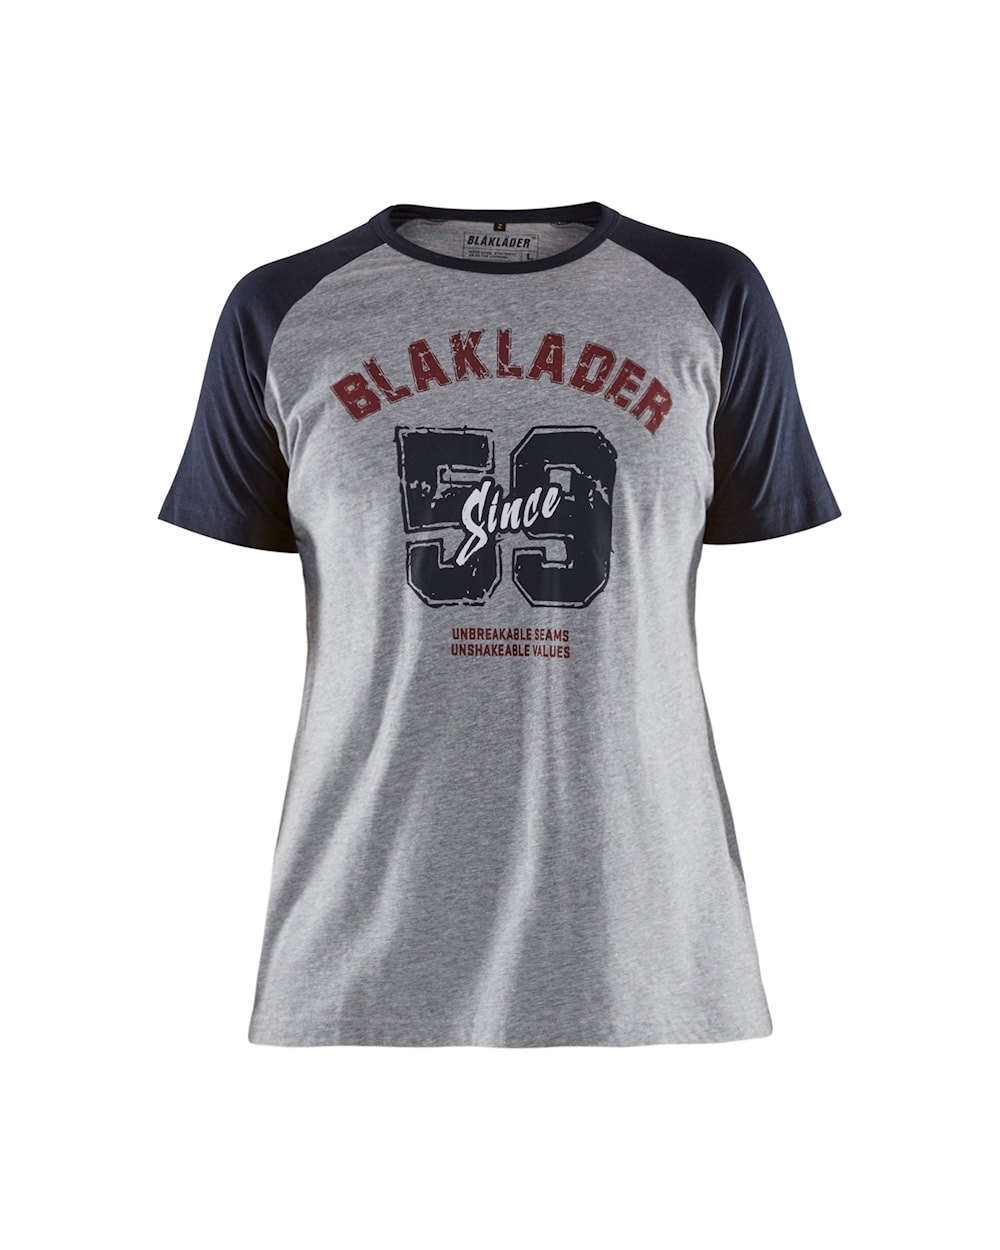 9405 1043 Blakläder Damen T-Shirt limited Blaklader since 1959